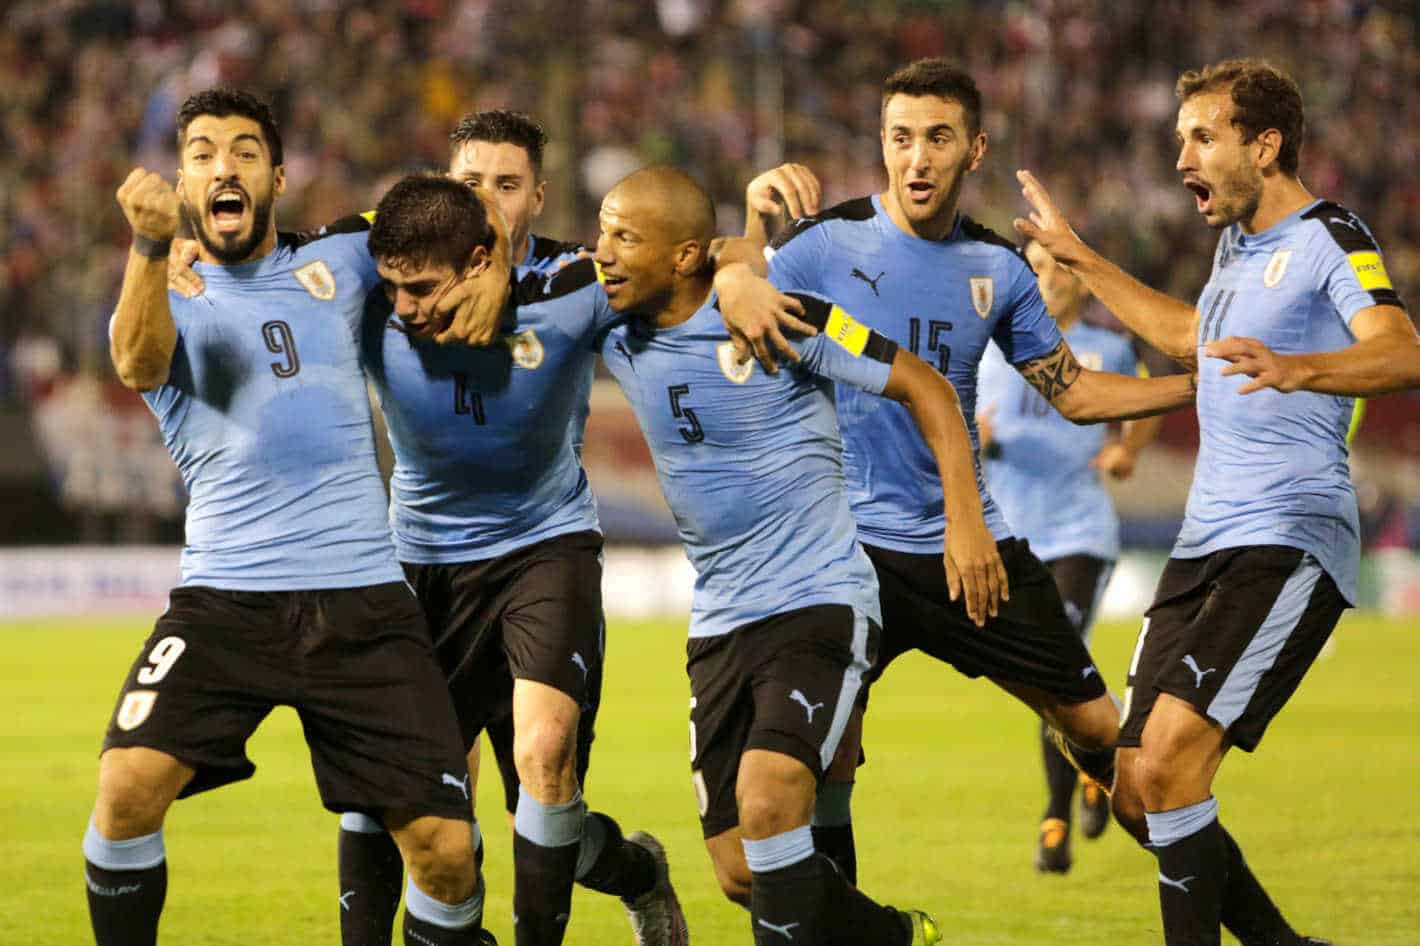 uruguay national fc soccer team 2019